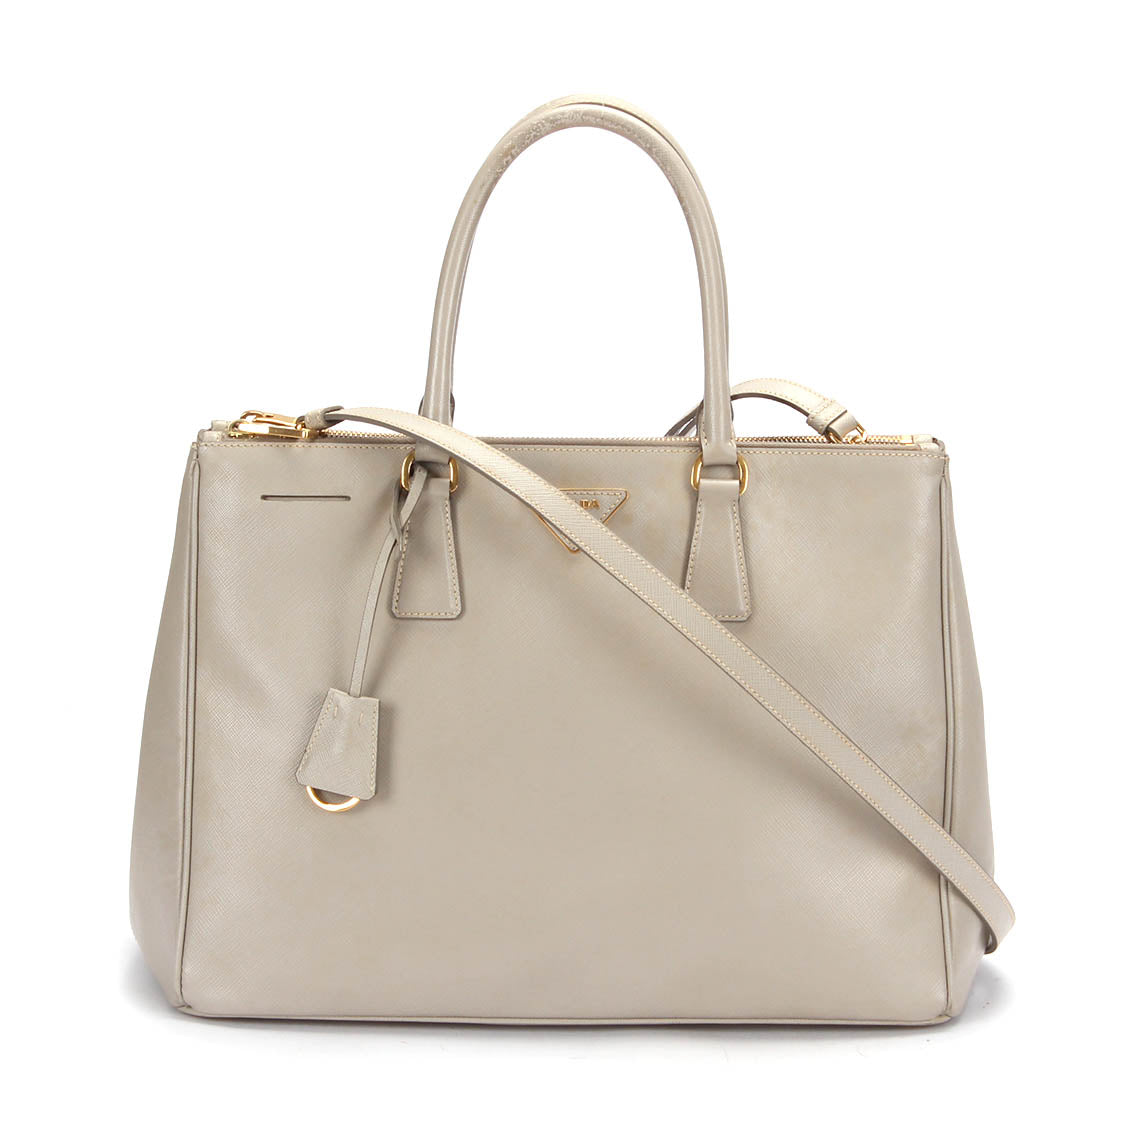 Prada Saffiano Galleria Double Zip Bag Leather Handbag in Bad condition